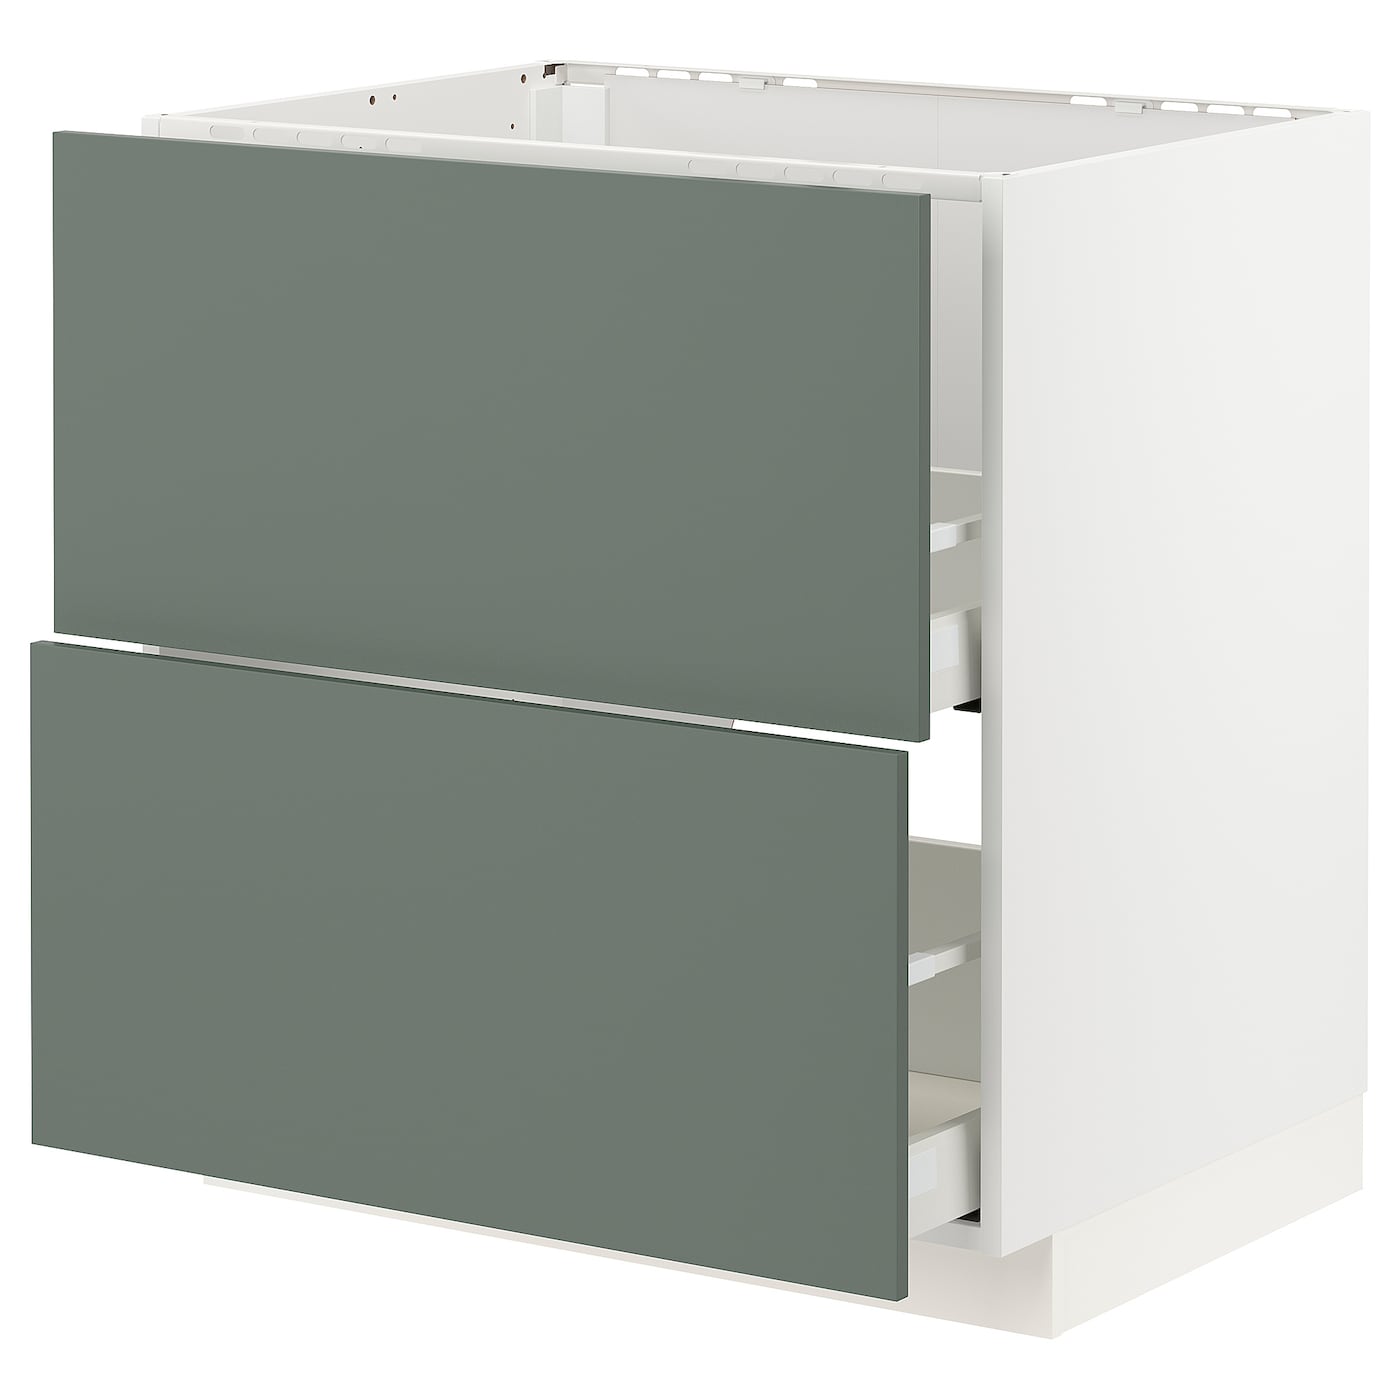 Напольный кухонный шкаф - METOD / MAXIMERA IKEA/ МЕТОД / МАКСИМЕРА ИКЕА, 88х80 см, белый/зеленый